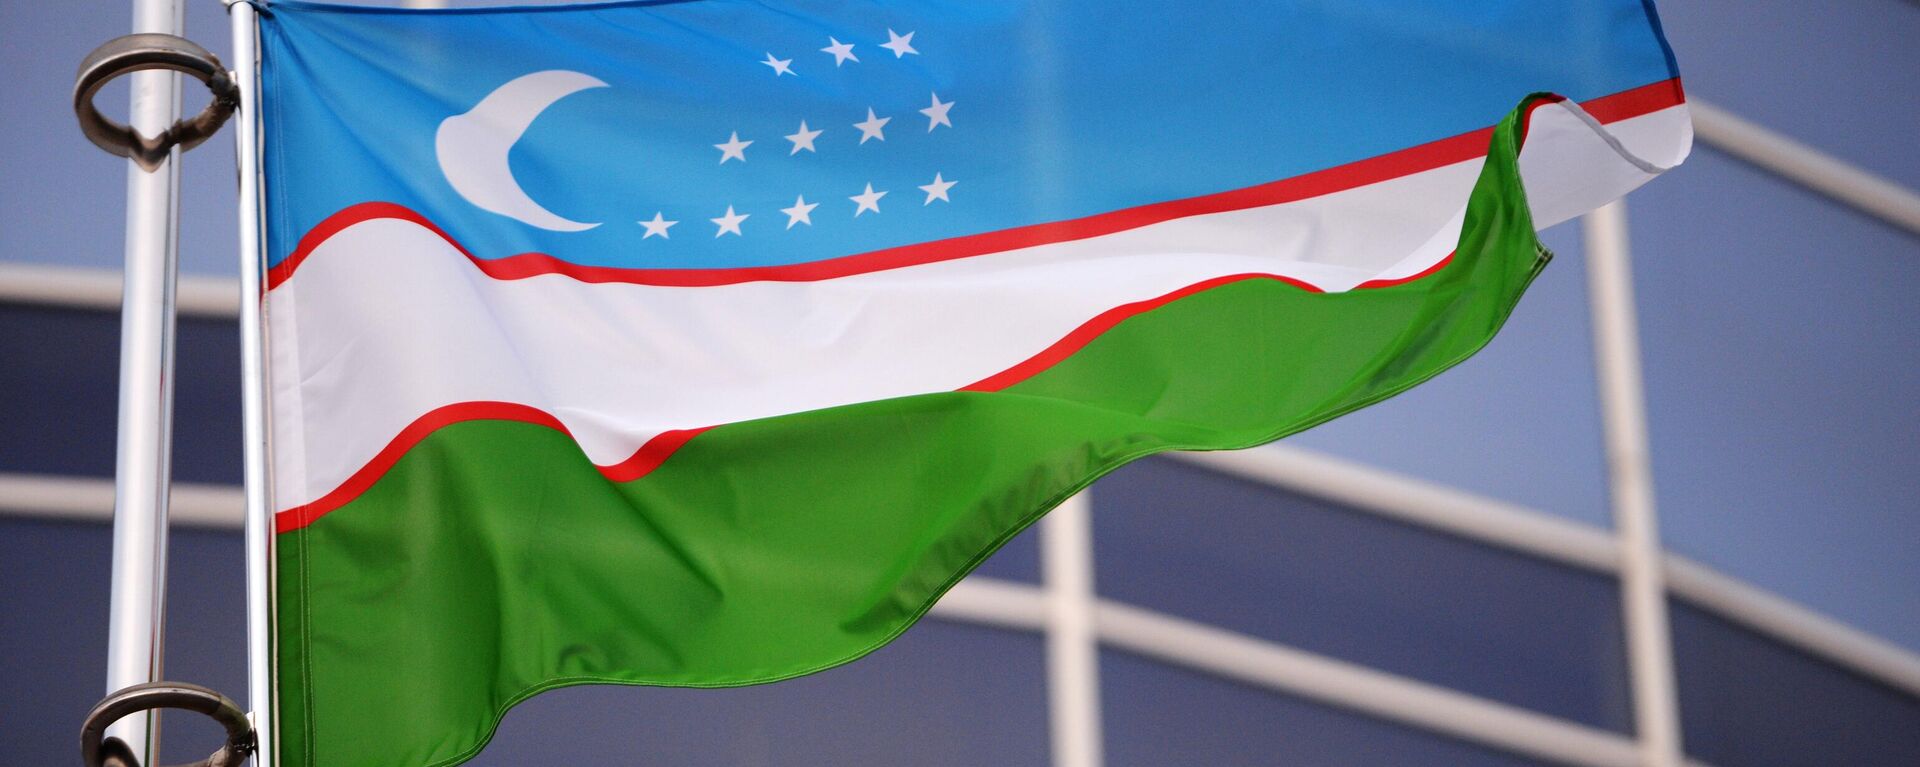 Флаг Узбекистана - Sputnik Узбекистан, 1920, 18.05.2021